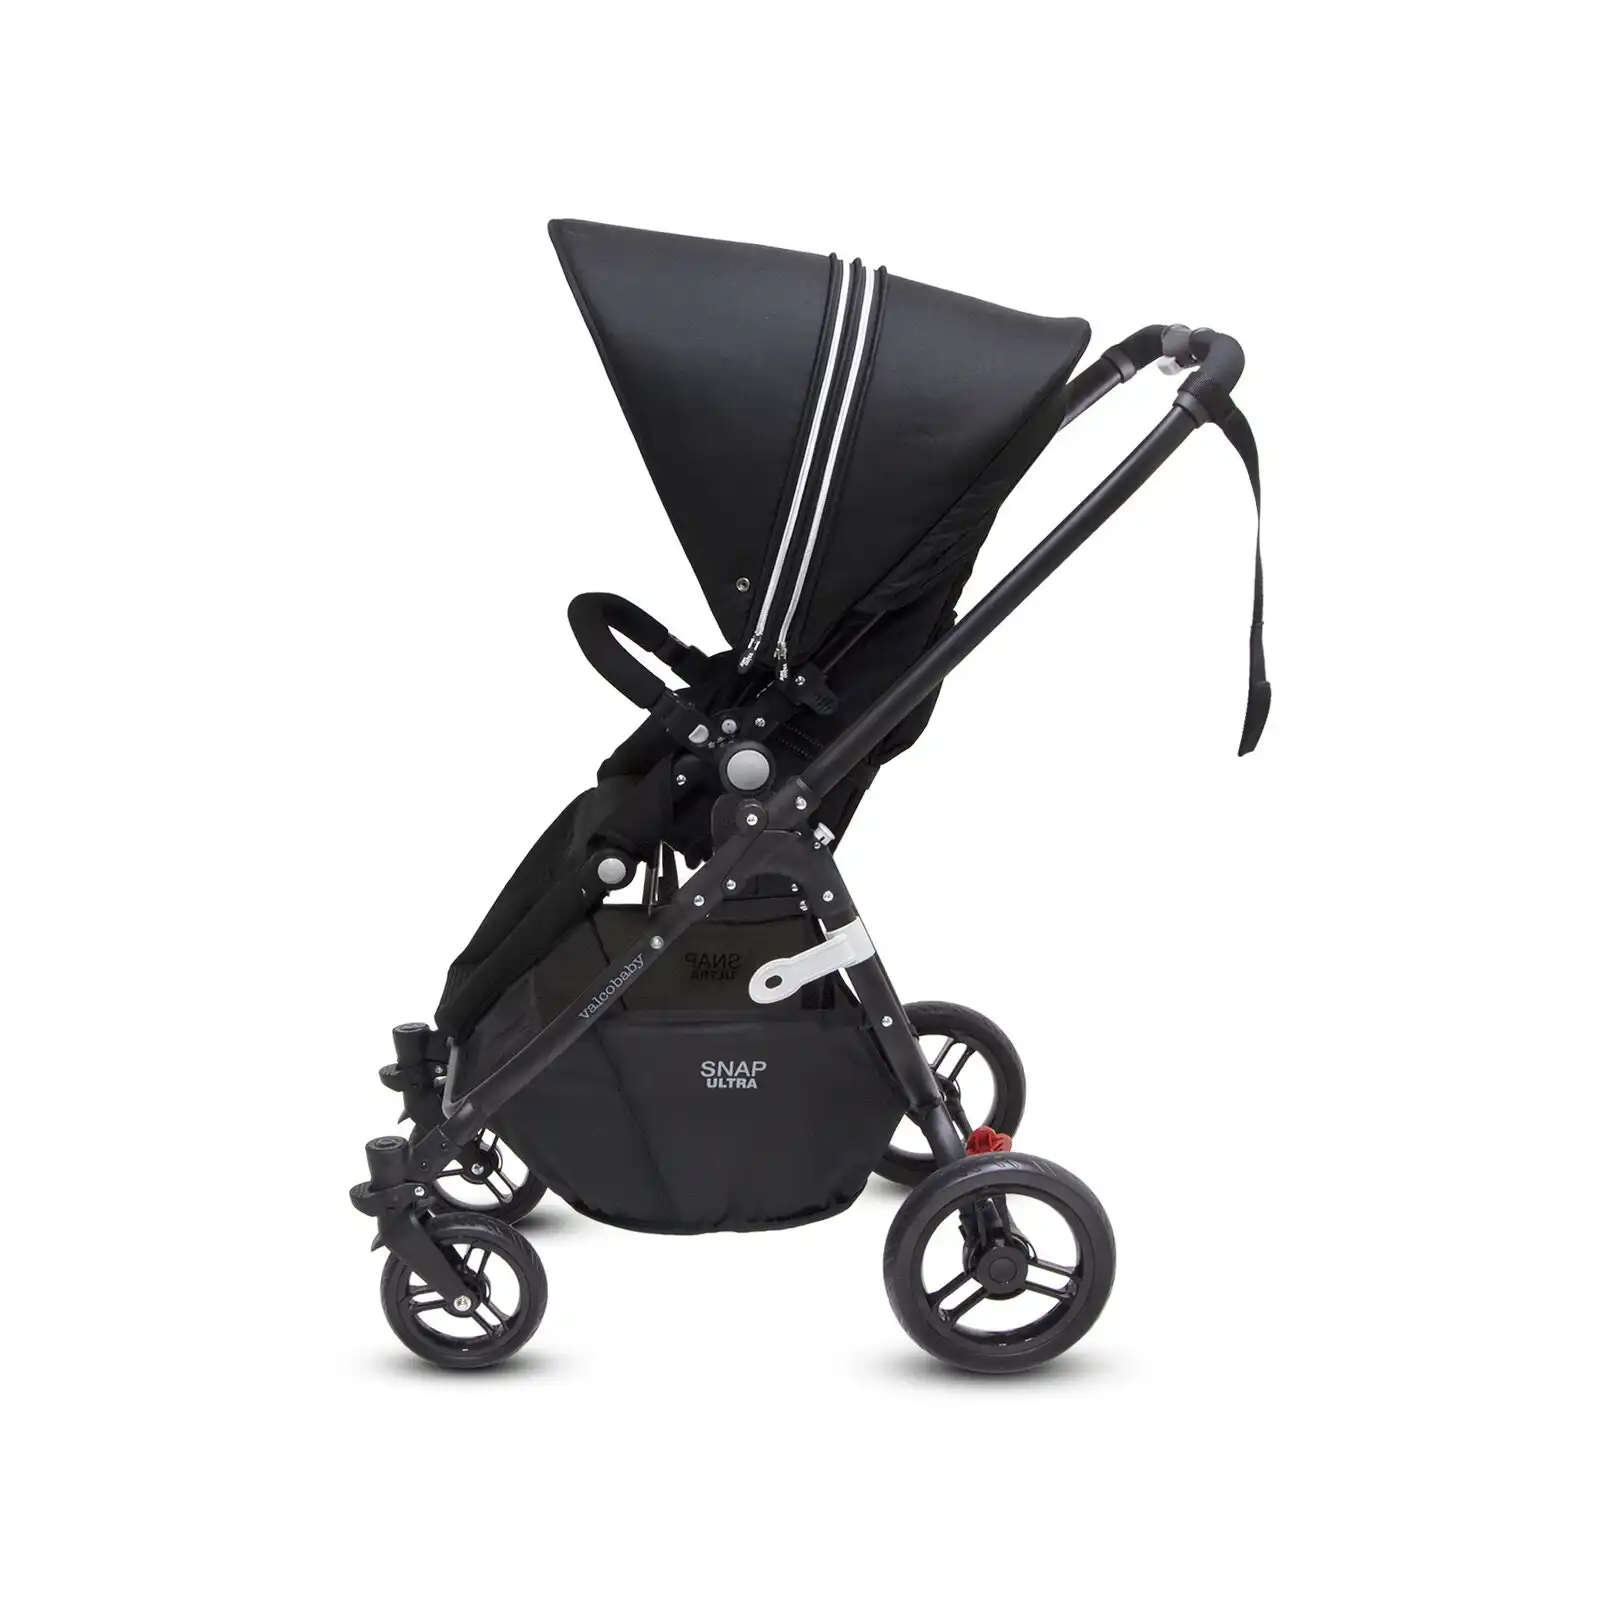 Valco Snap Ultra P Pram/Stroller Foldable/Ergo-Pivot Seat for Baby/Infant Black